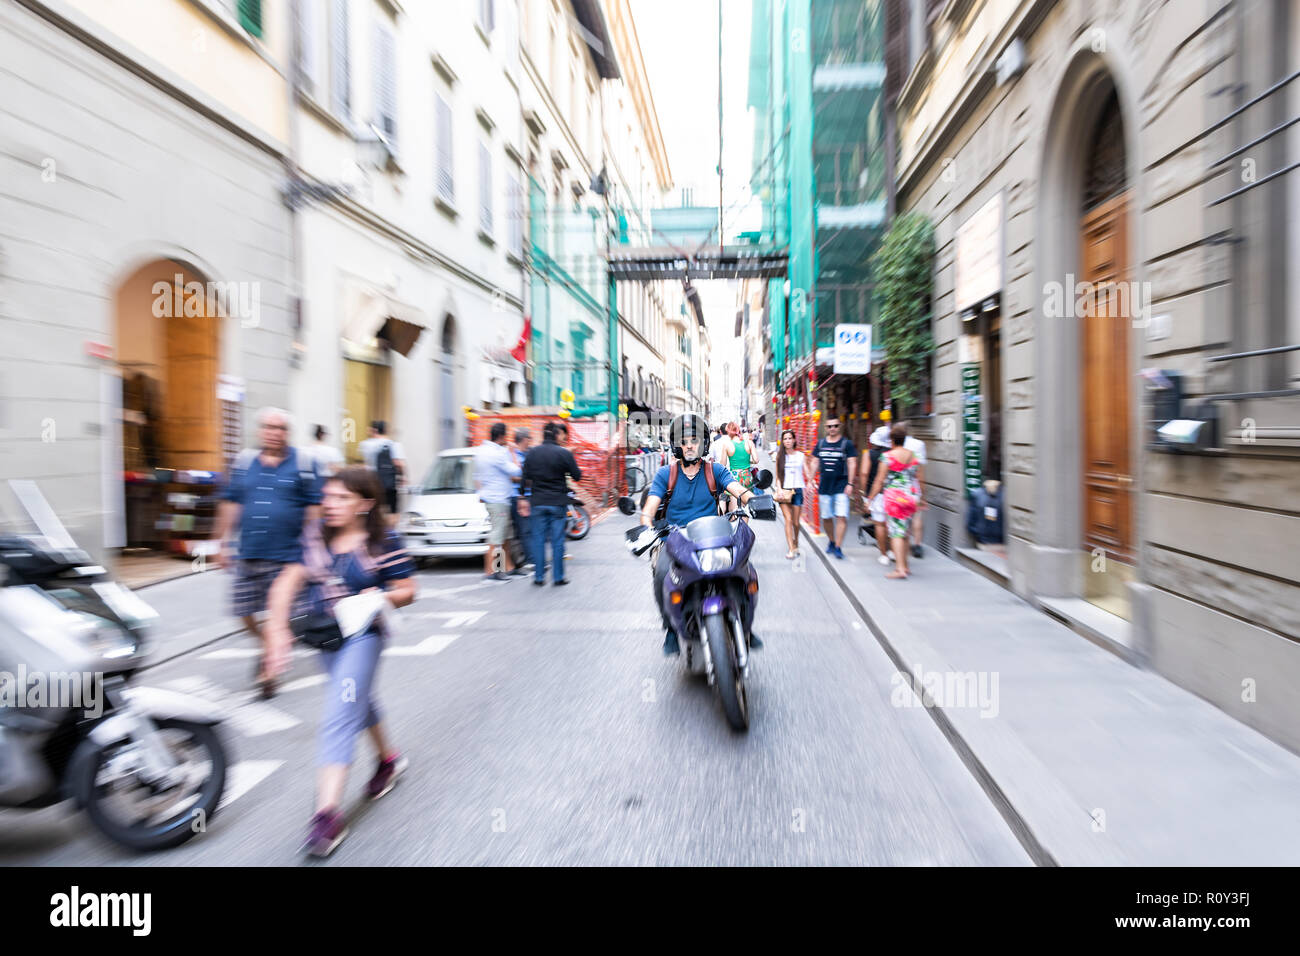 Florence, Italie - 30 août 2018 : Zoom Zoom rafale, en effet le man riding scooter Vespa sur rue par trottoir à Firenze avec les gens, les touristes wa Banque D'Images